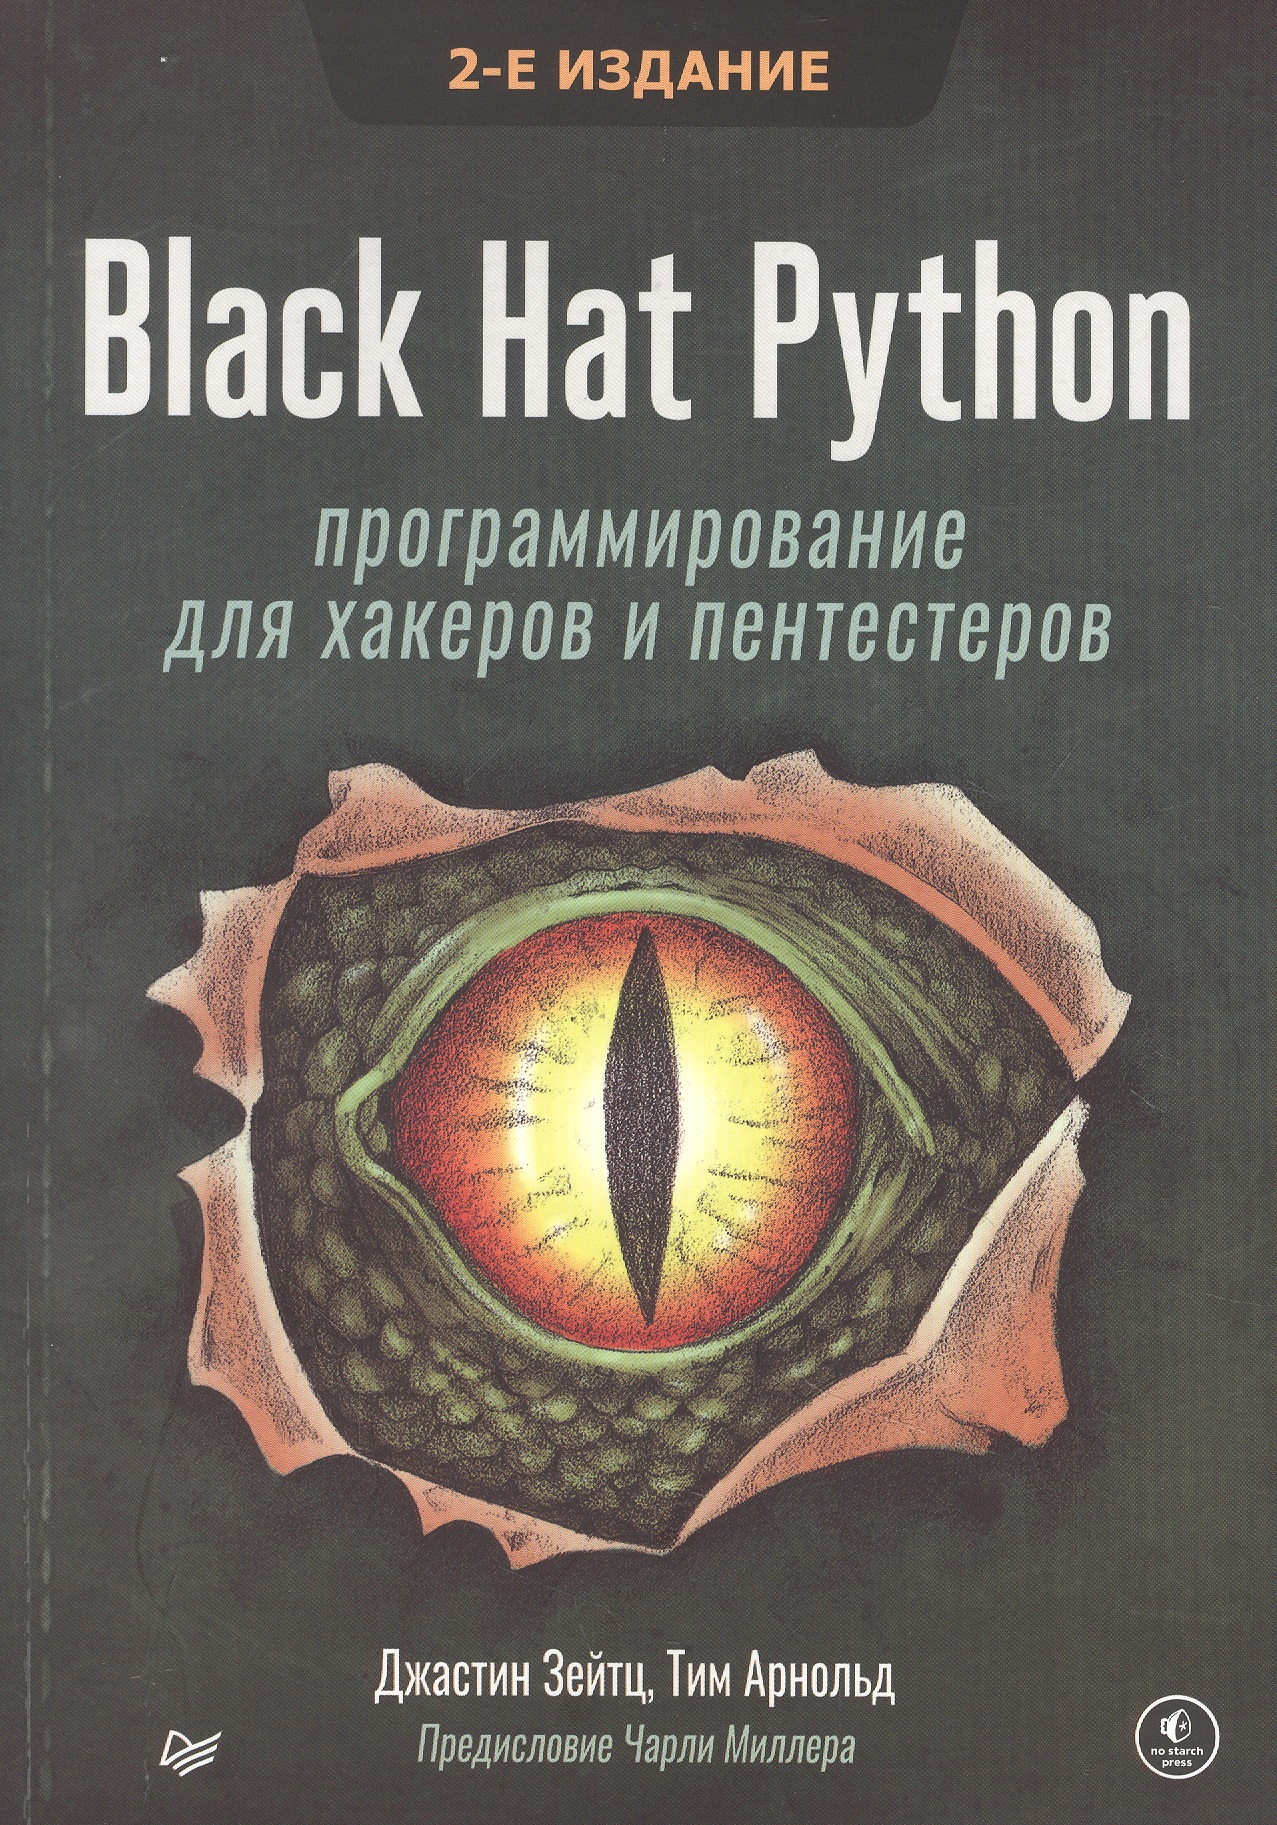 Hat python. Книжки по программированию Python. Black hat Python. Пентестер книга Издательство хакер.